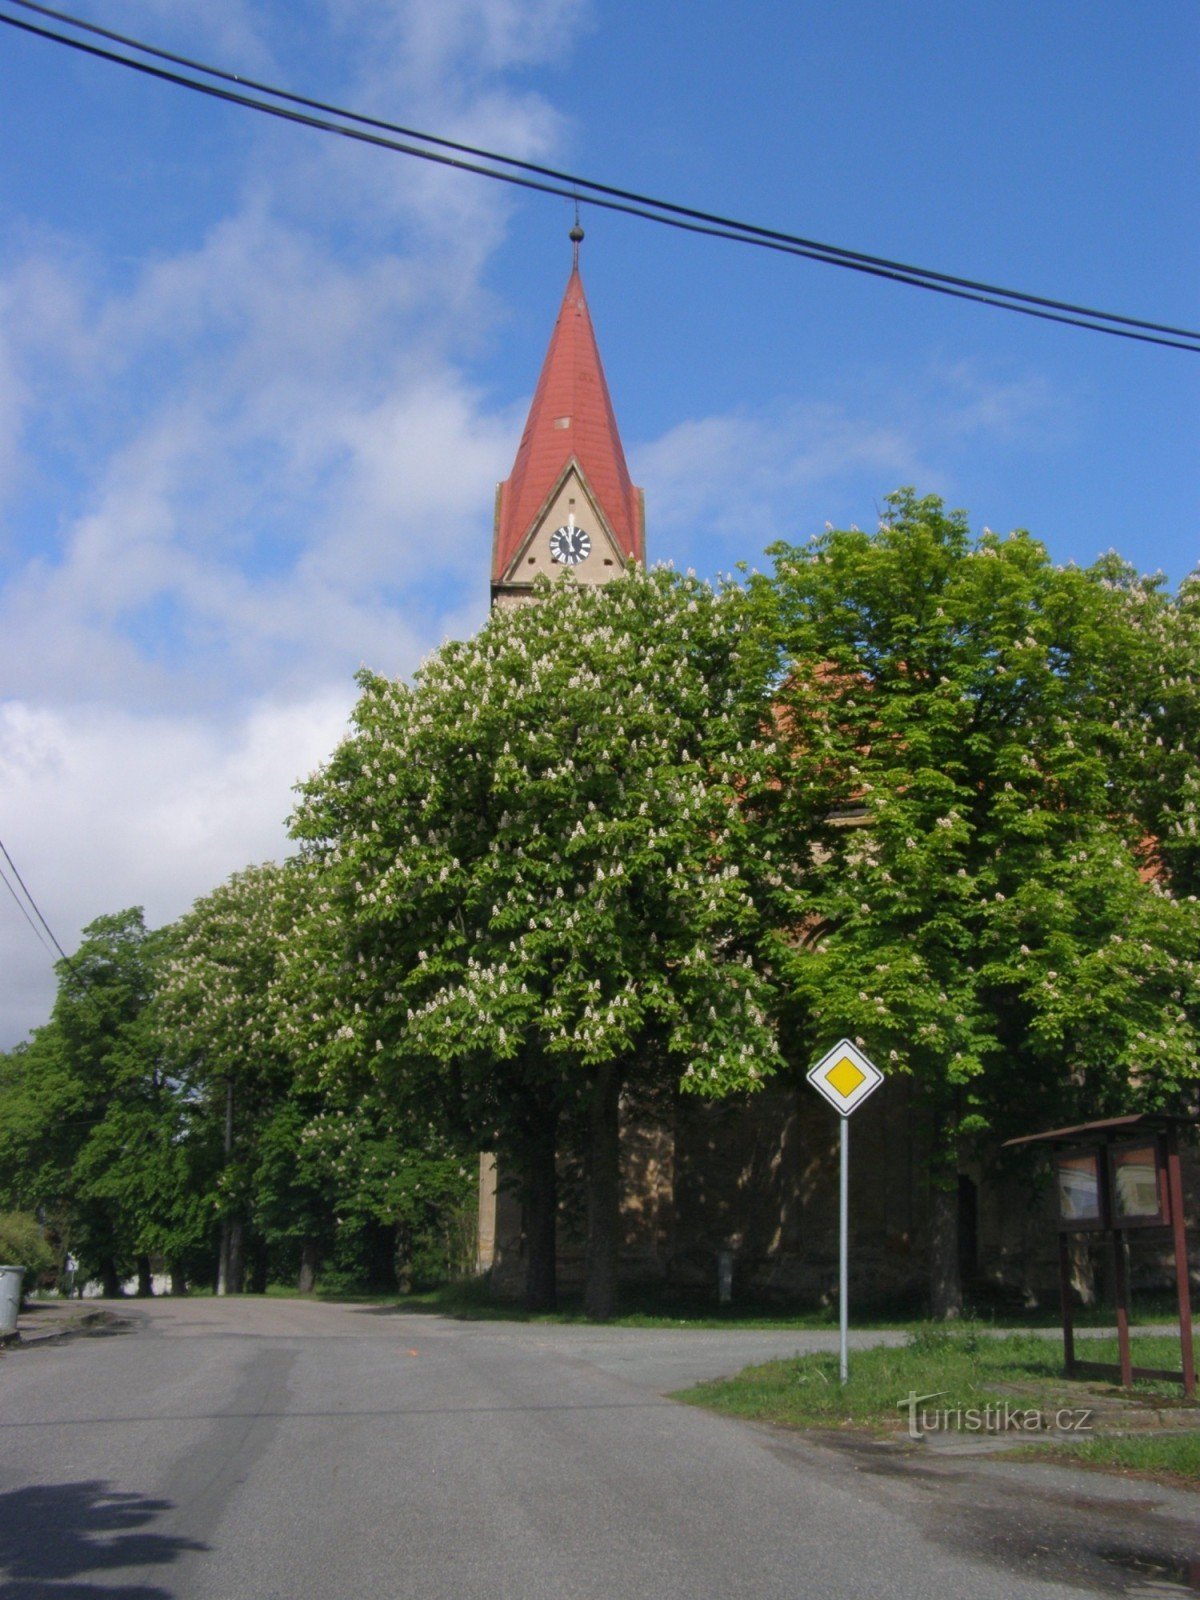 Grand-mère - Église St. Pierre et Paul